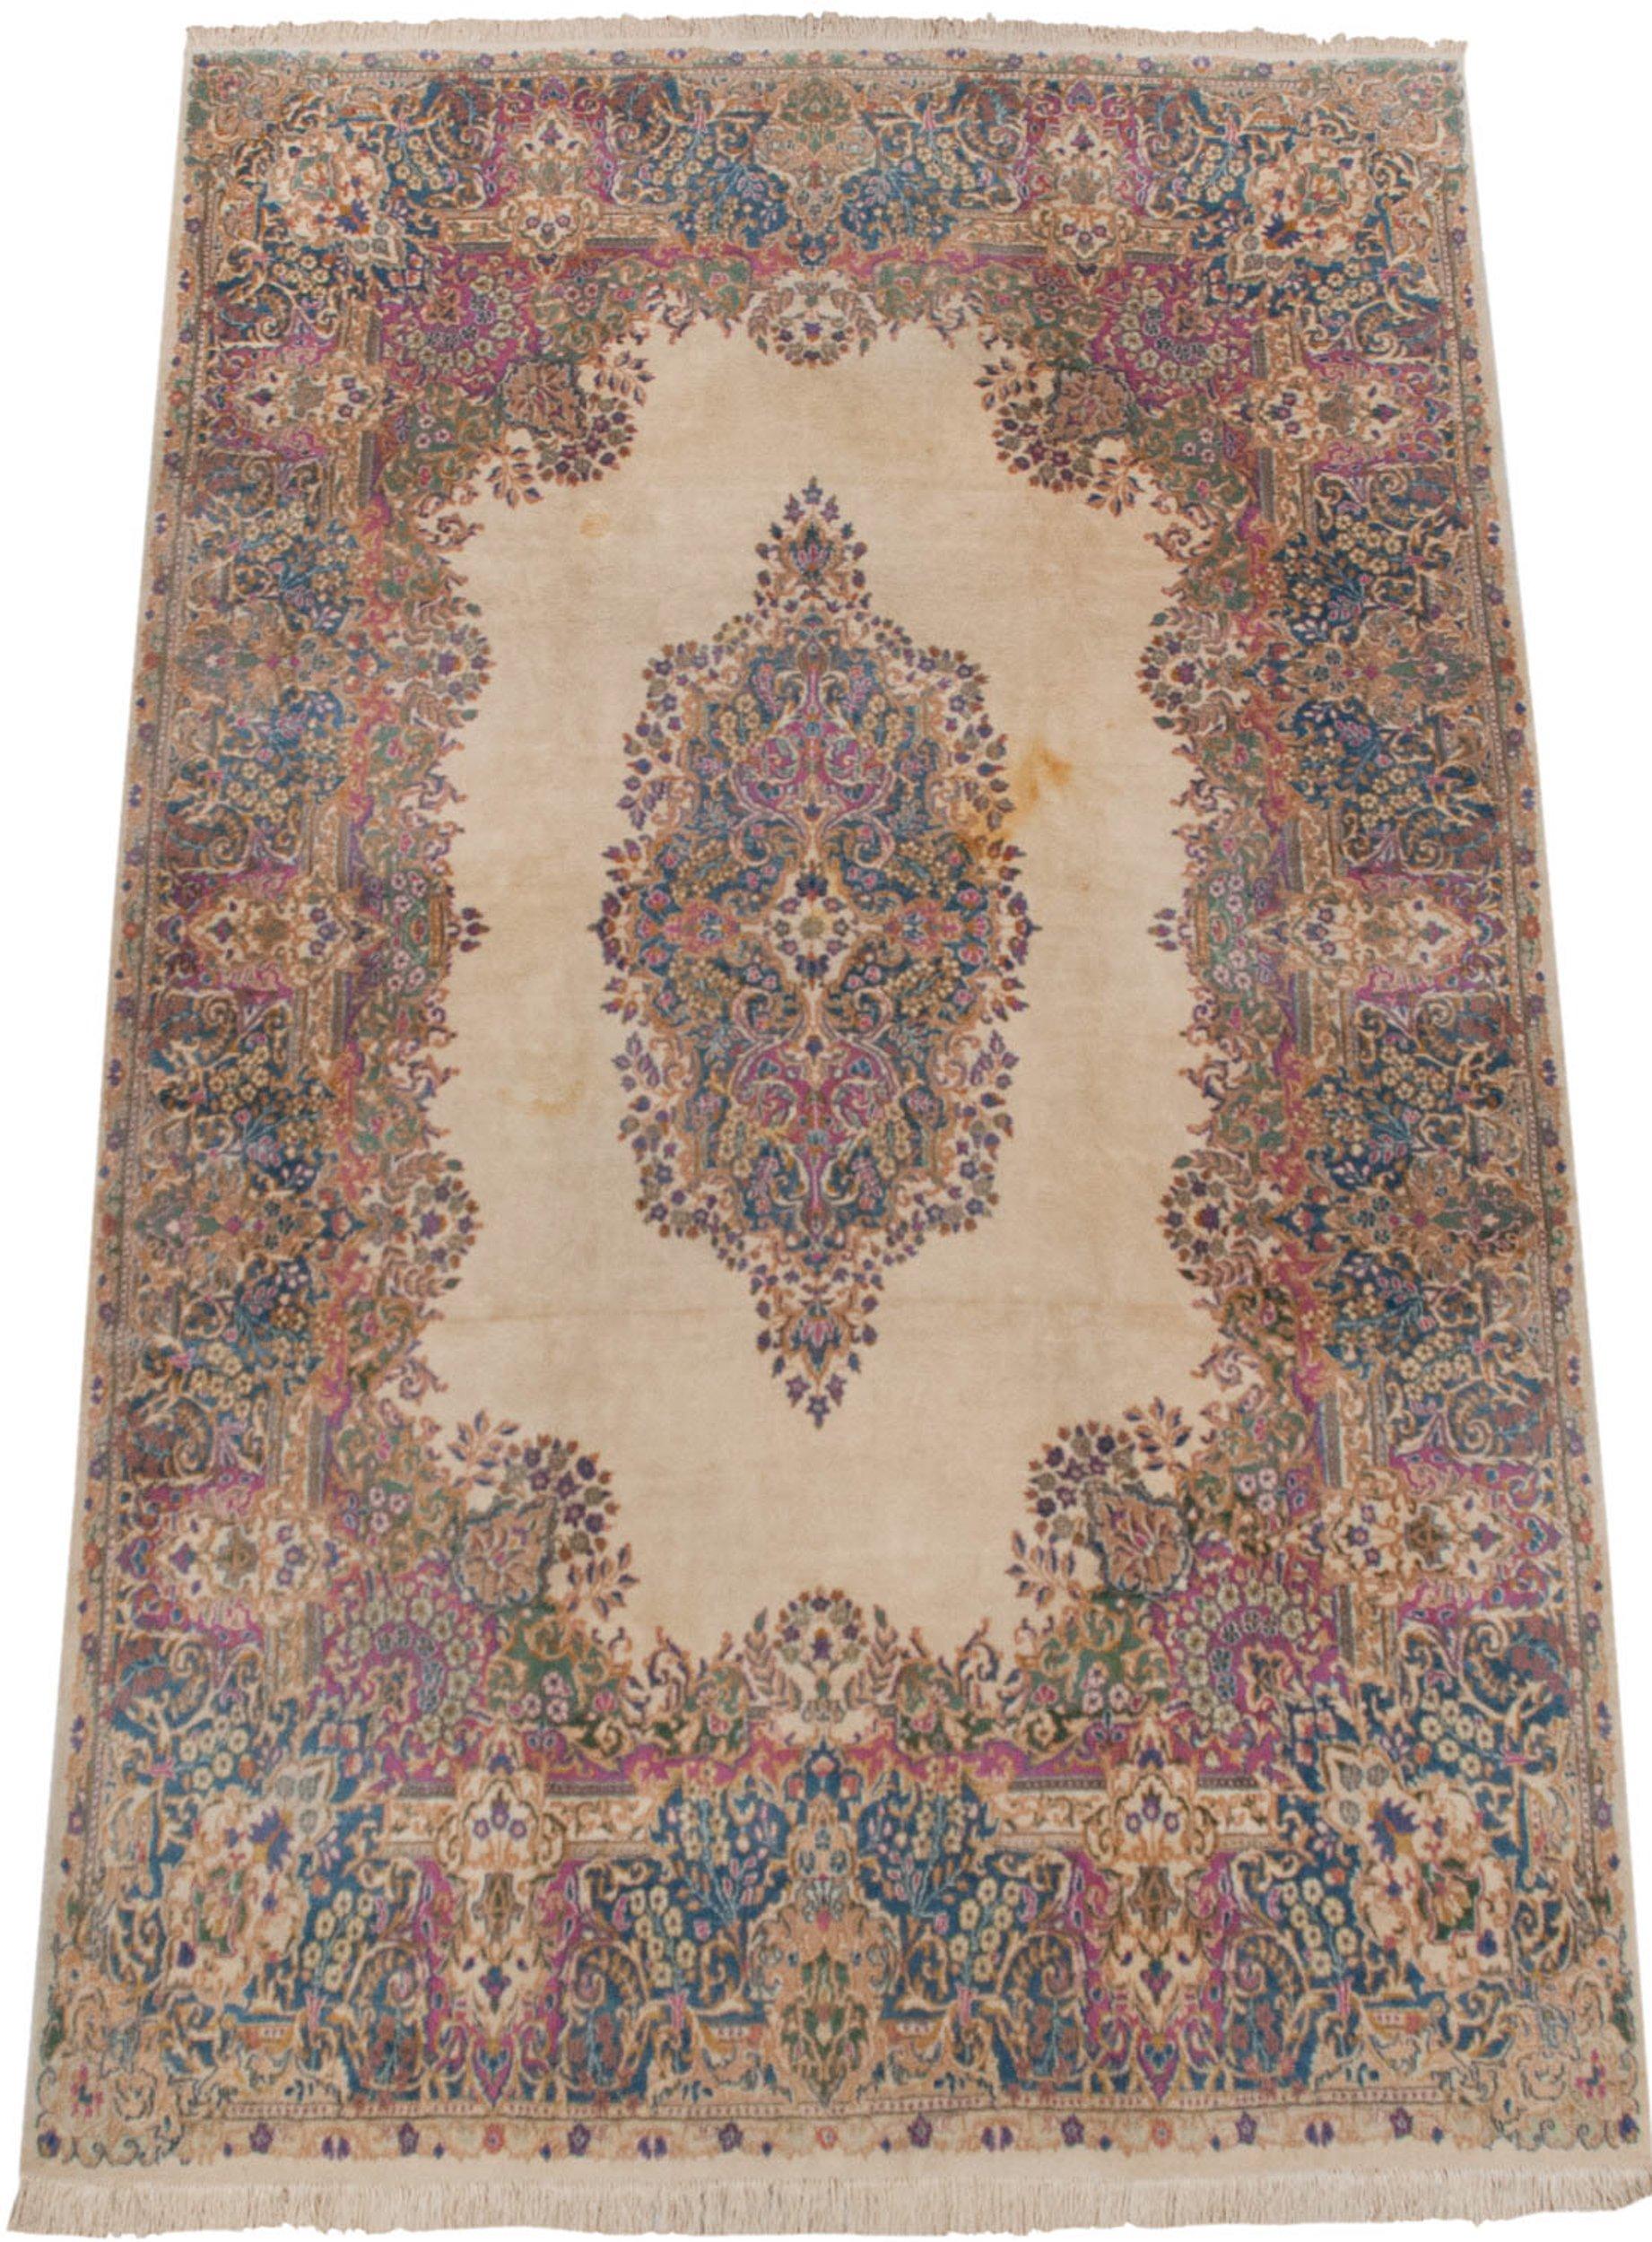 Vintage Kerman Carpet For Sale 9